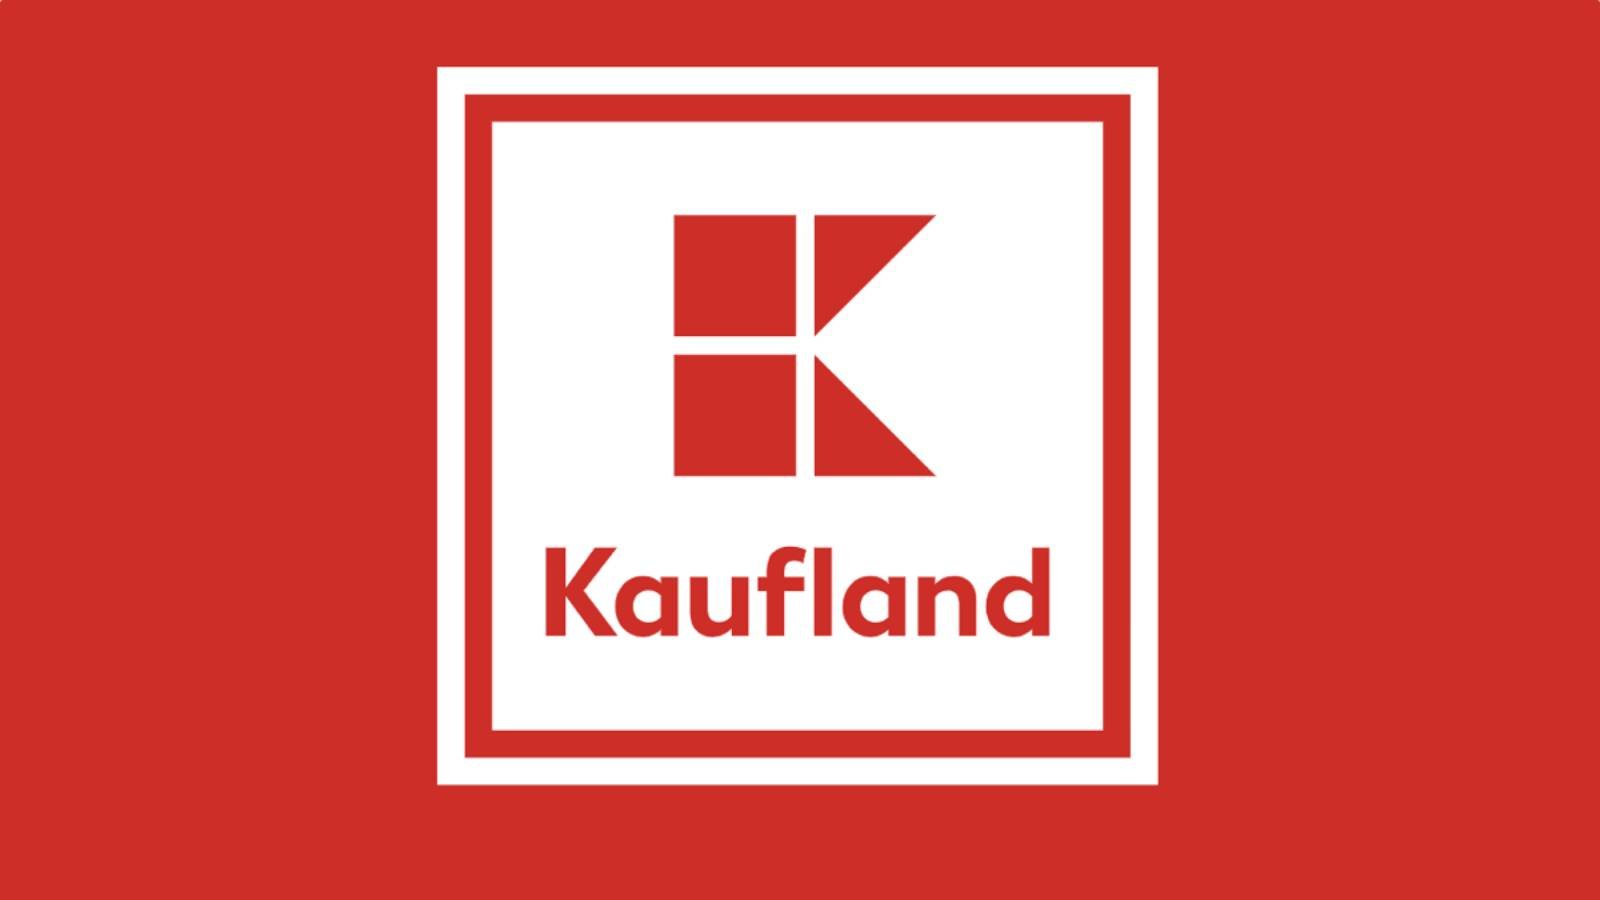 Kaufland-informatie